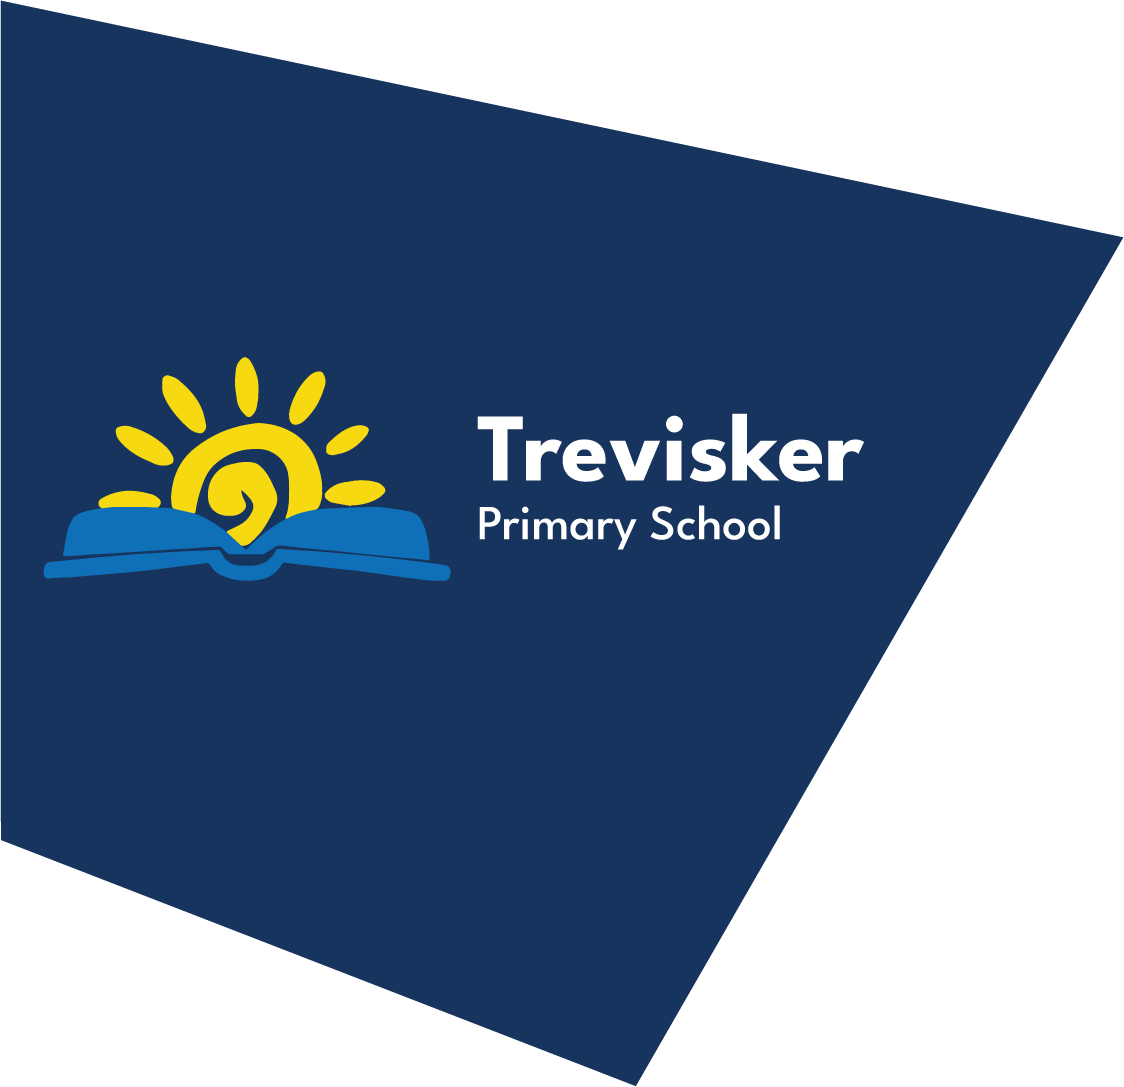 Trevisker Primary School